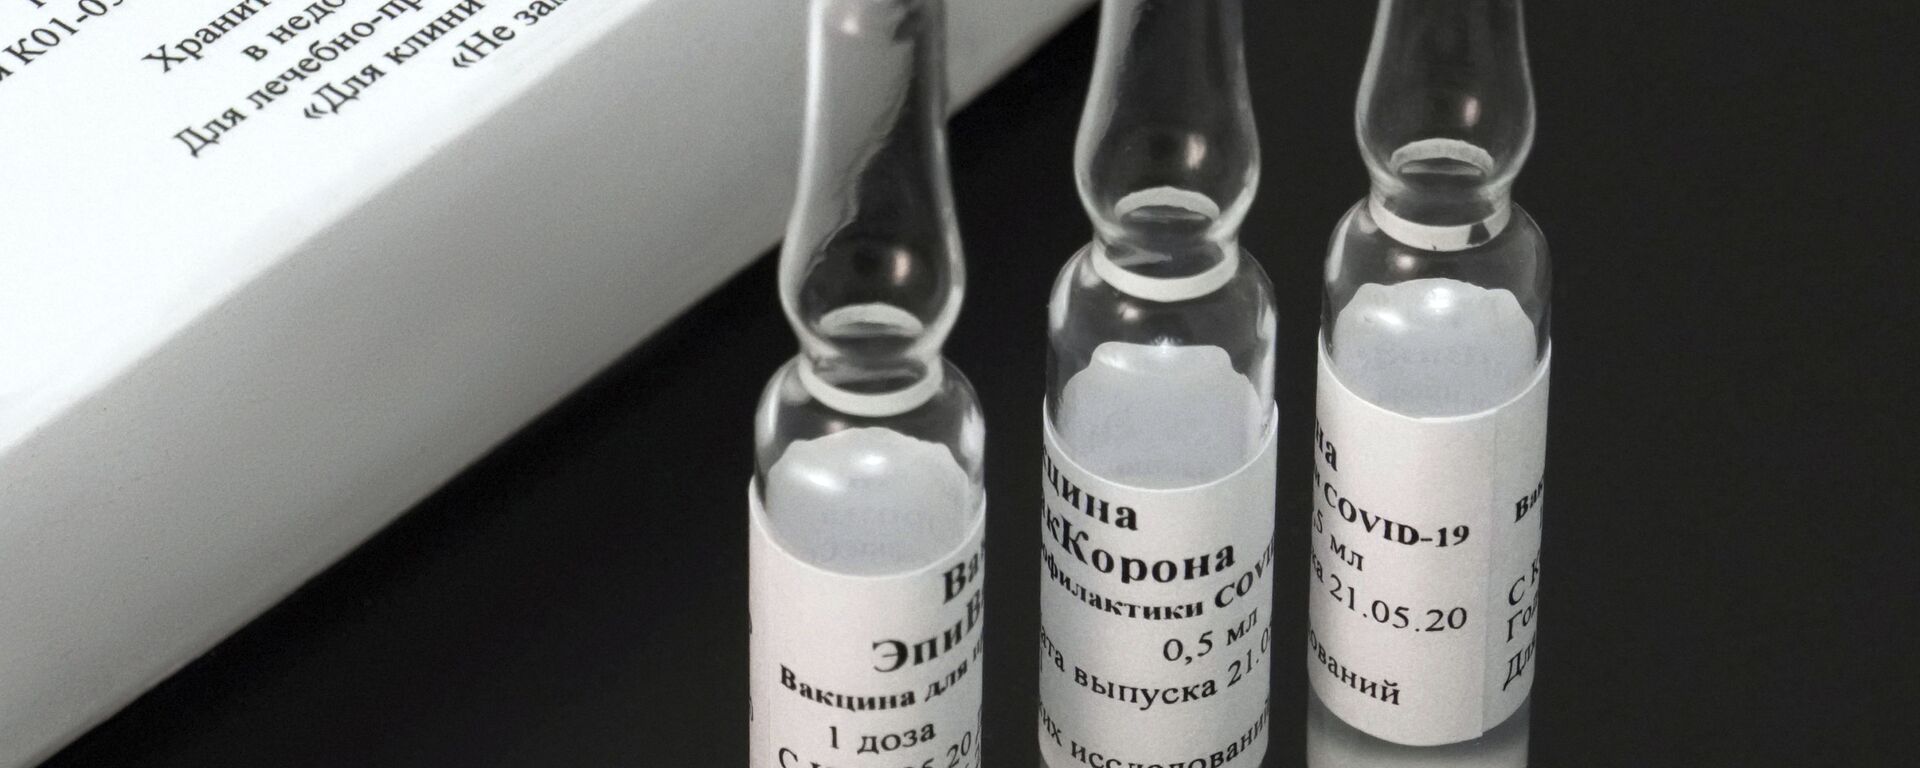 EpiVacCorona, vacuna rusa - Sputnik Mundo, 1920, 09.04.2021